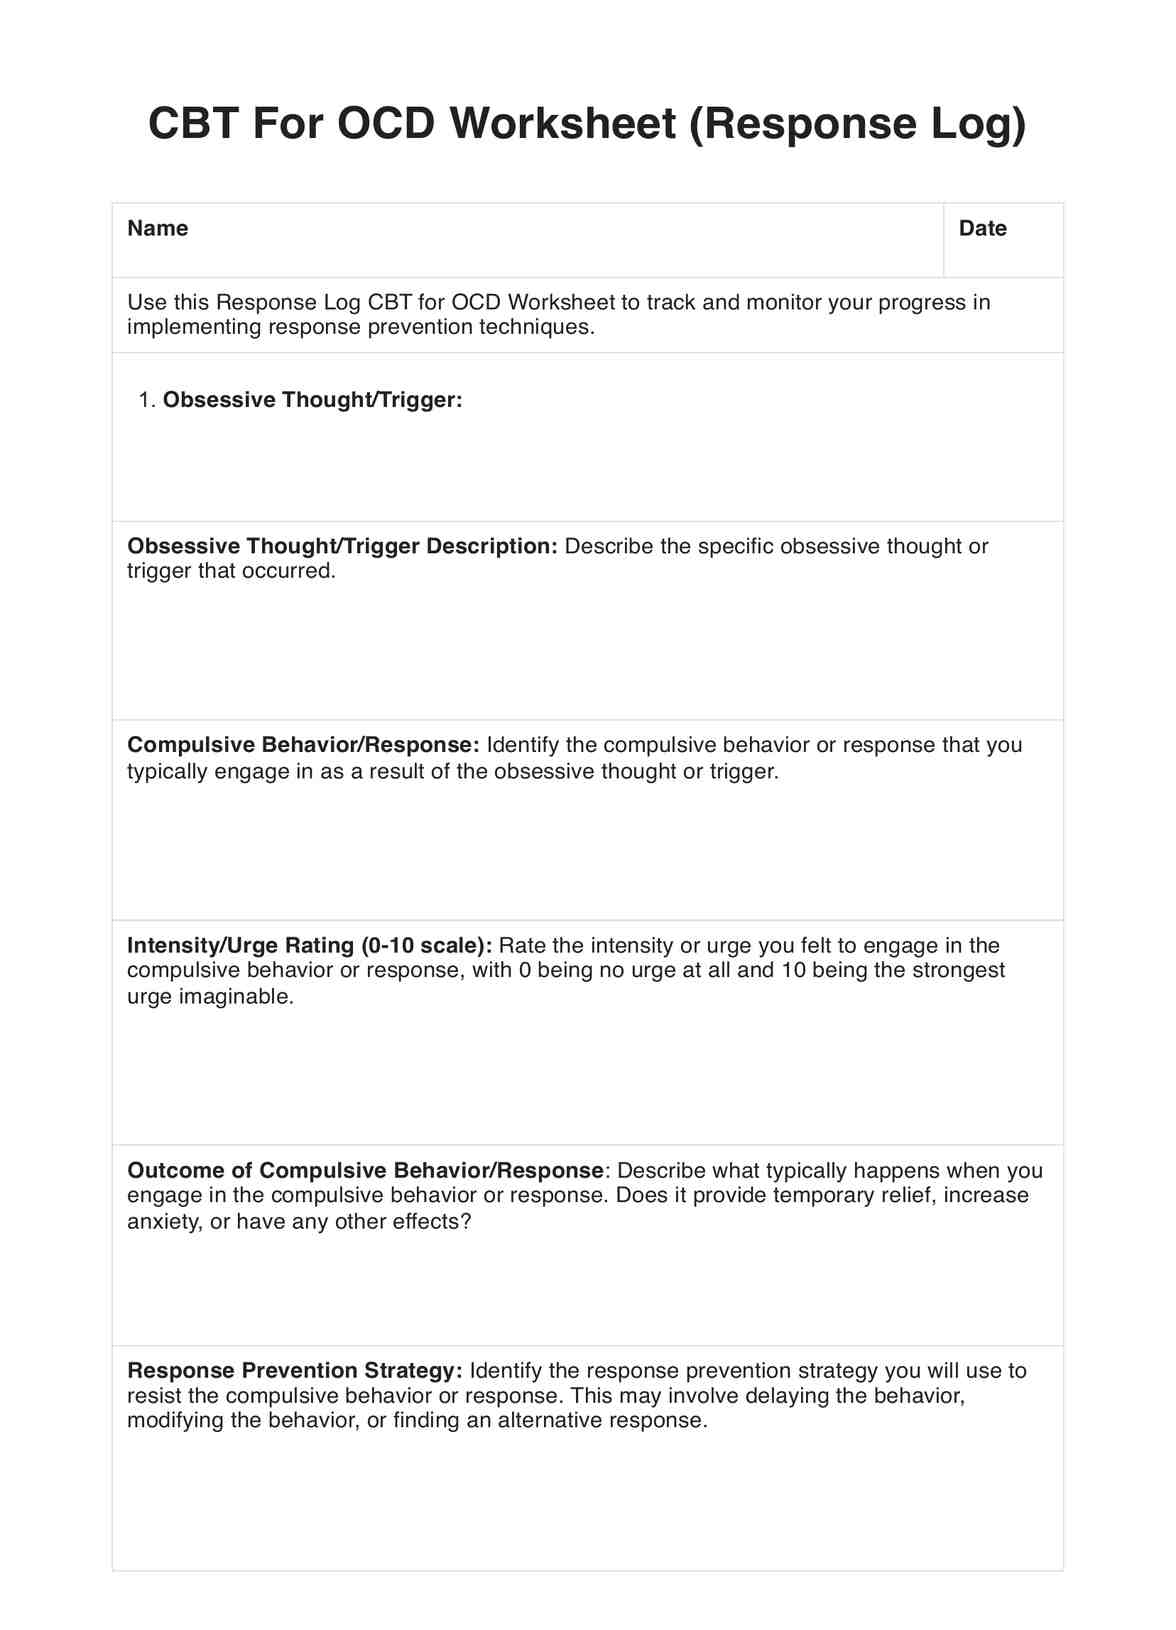 CBT For OCD Worksheet PDF Example